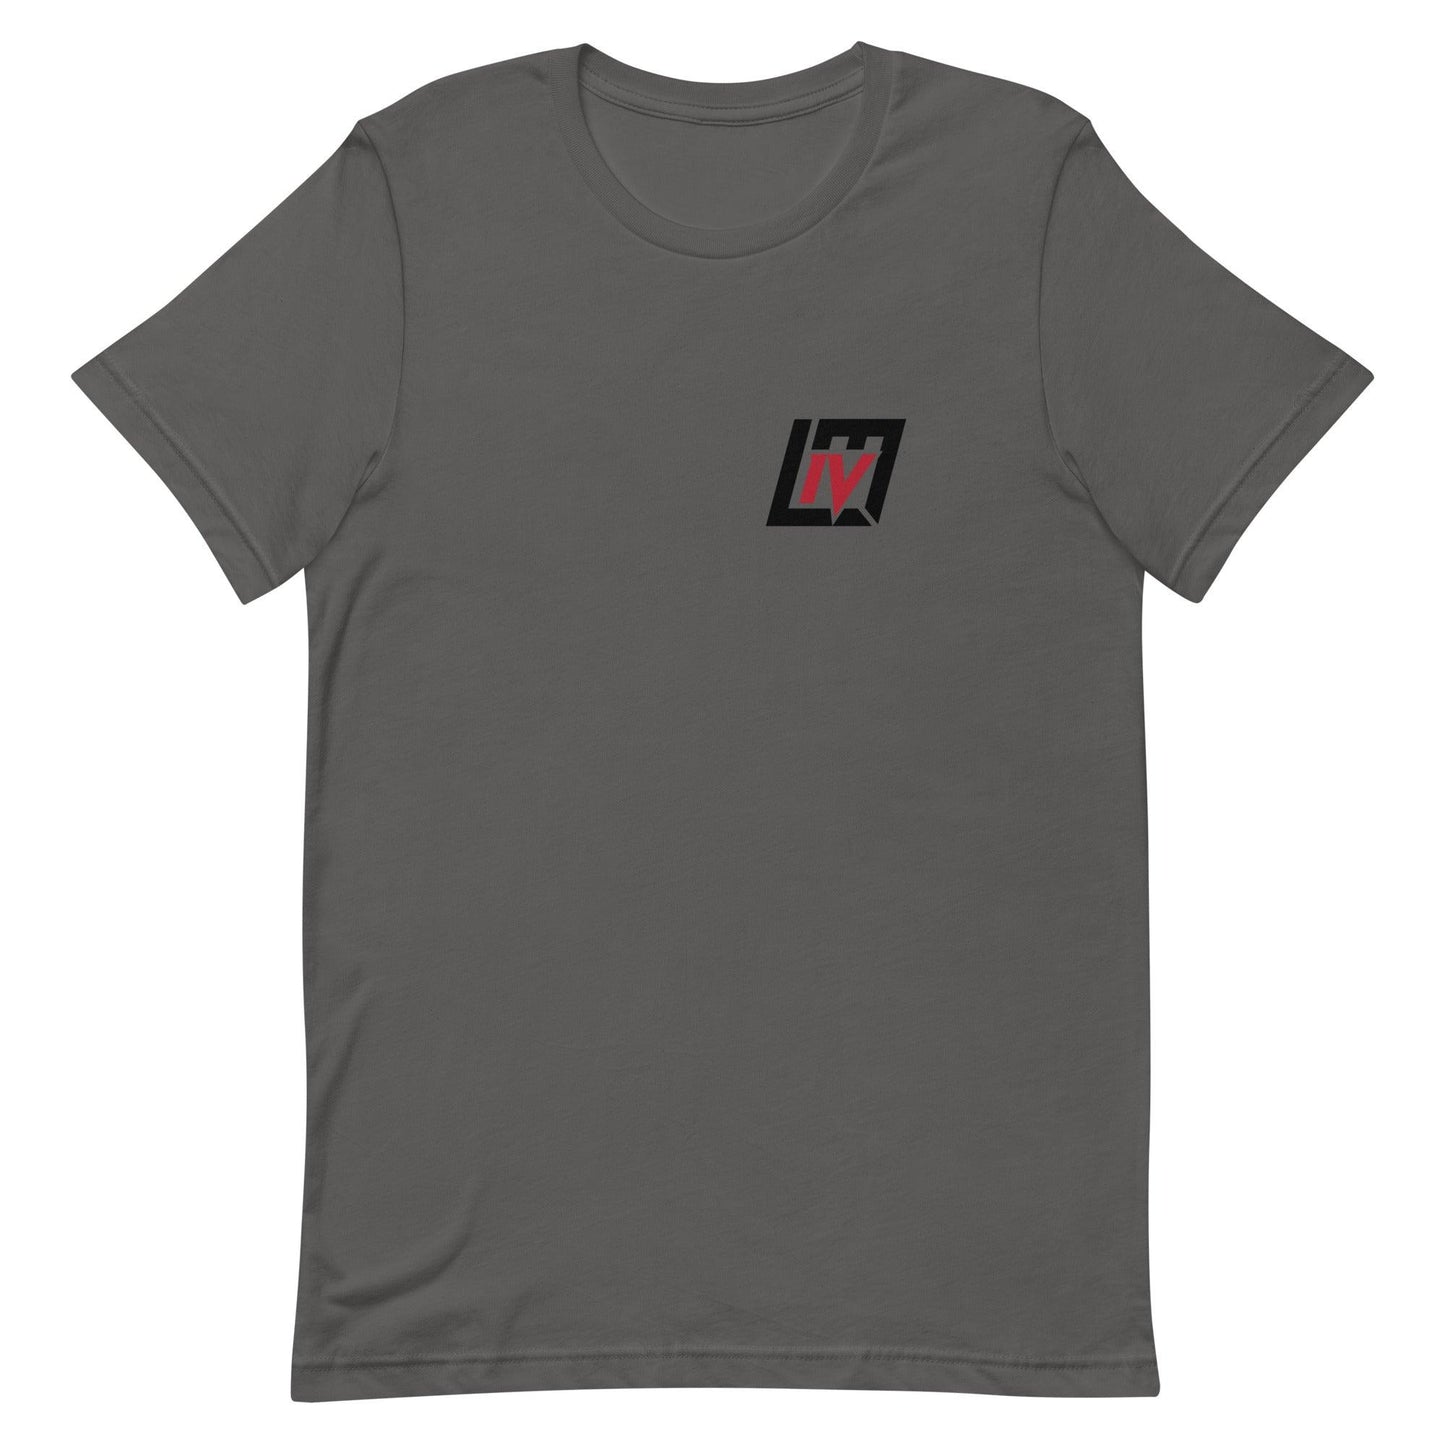 Lorenzo Mauldin IV "Elite" t-shirt - Fan Arch